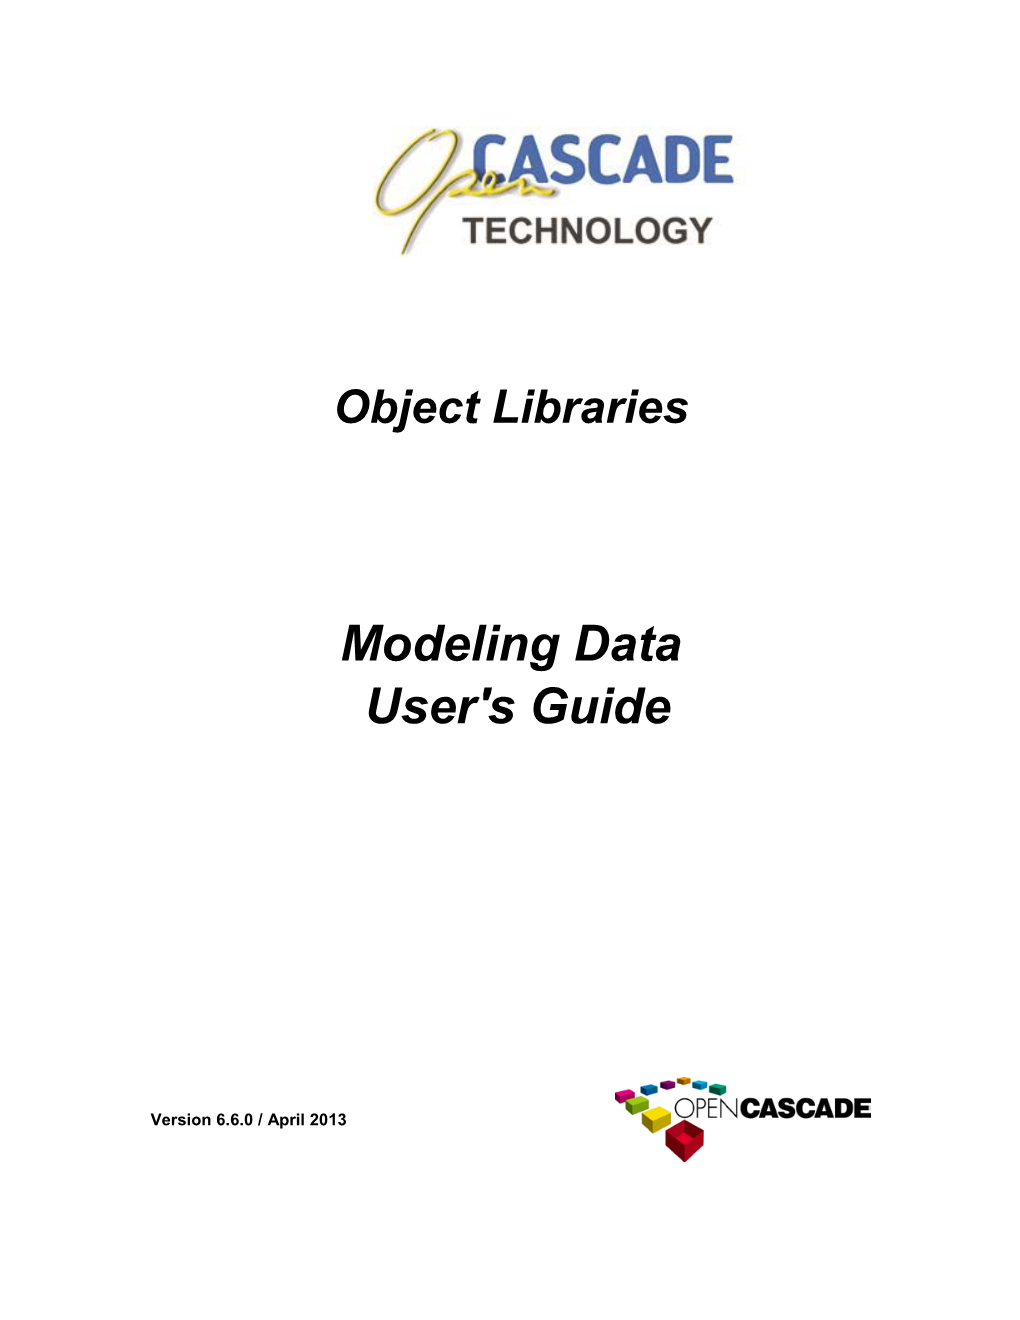 Modeling Data User's Guide